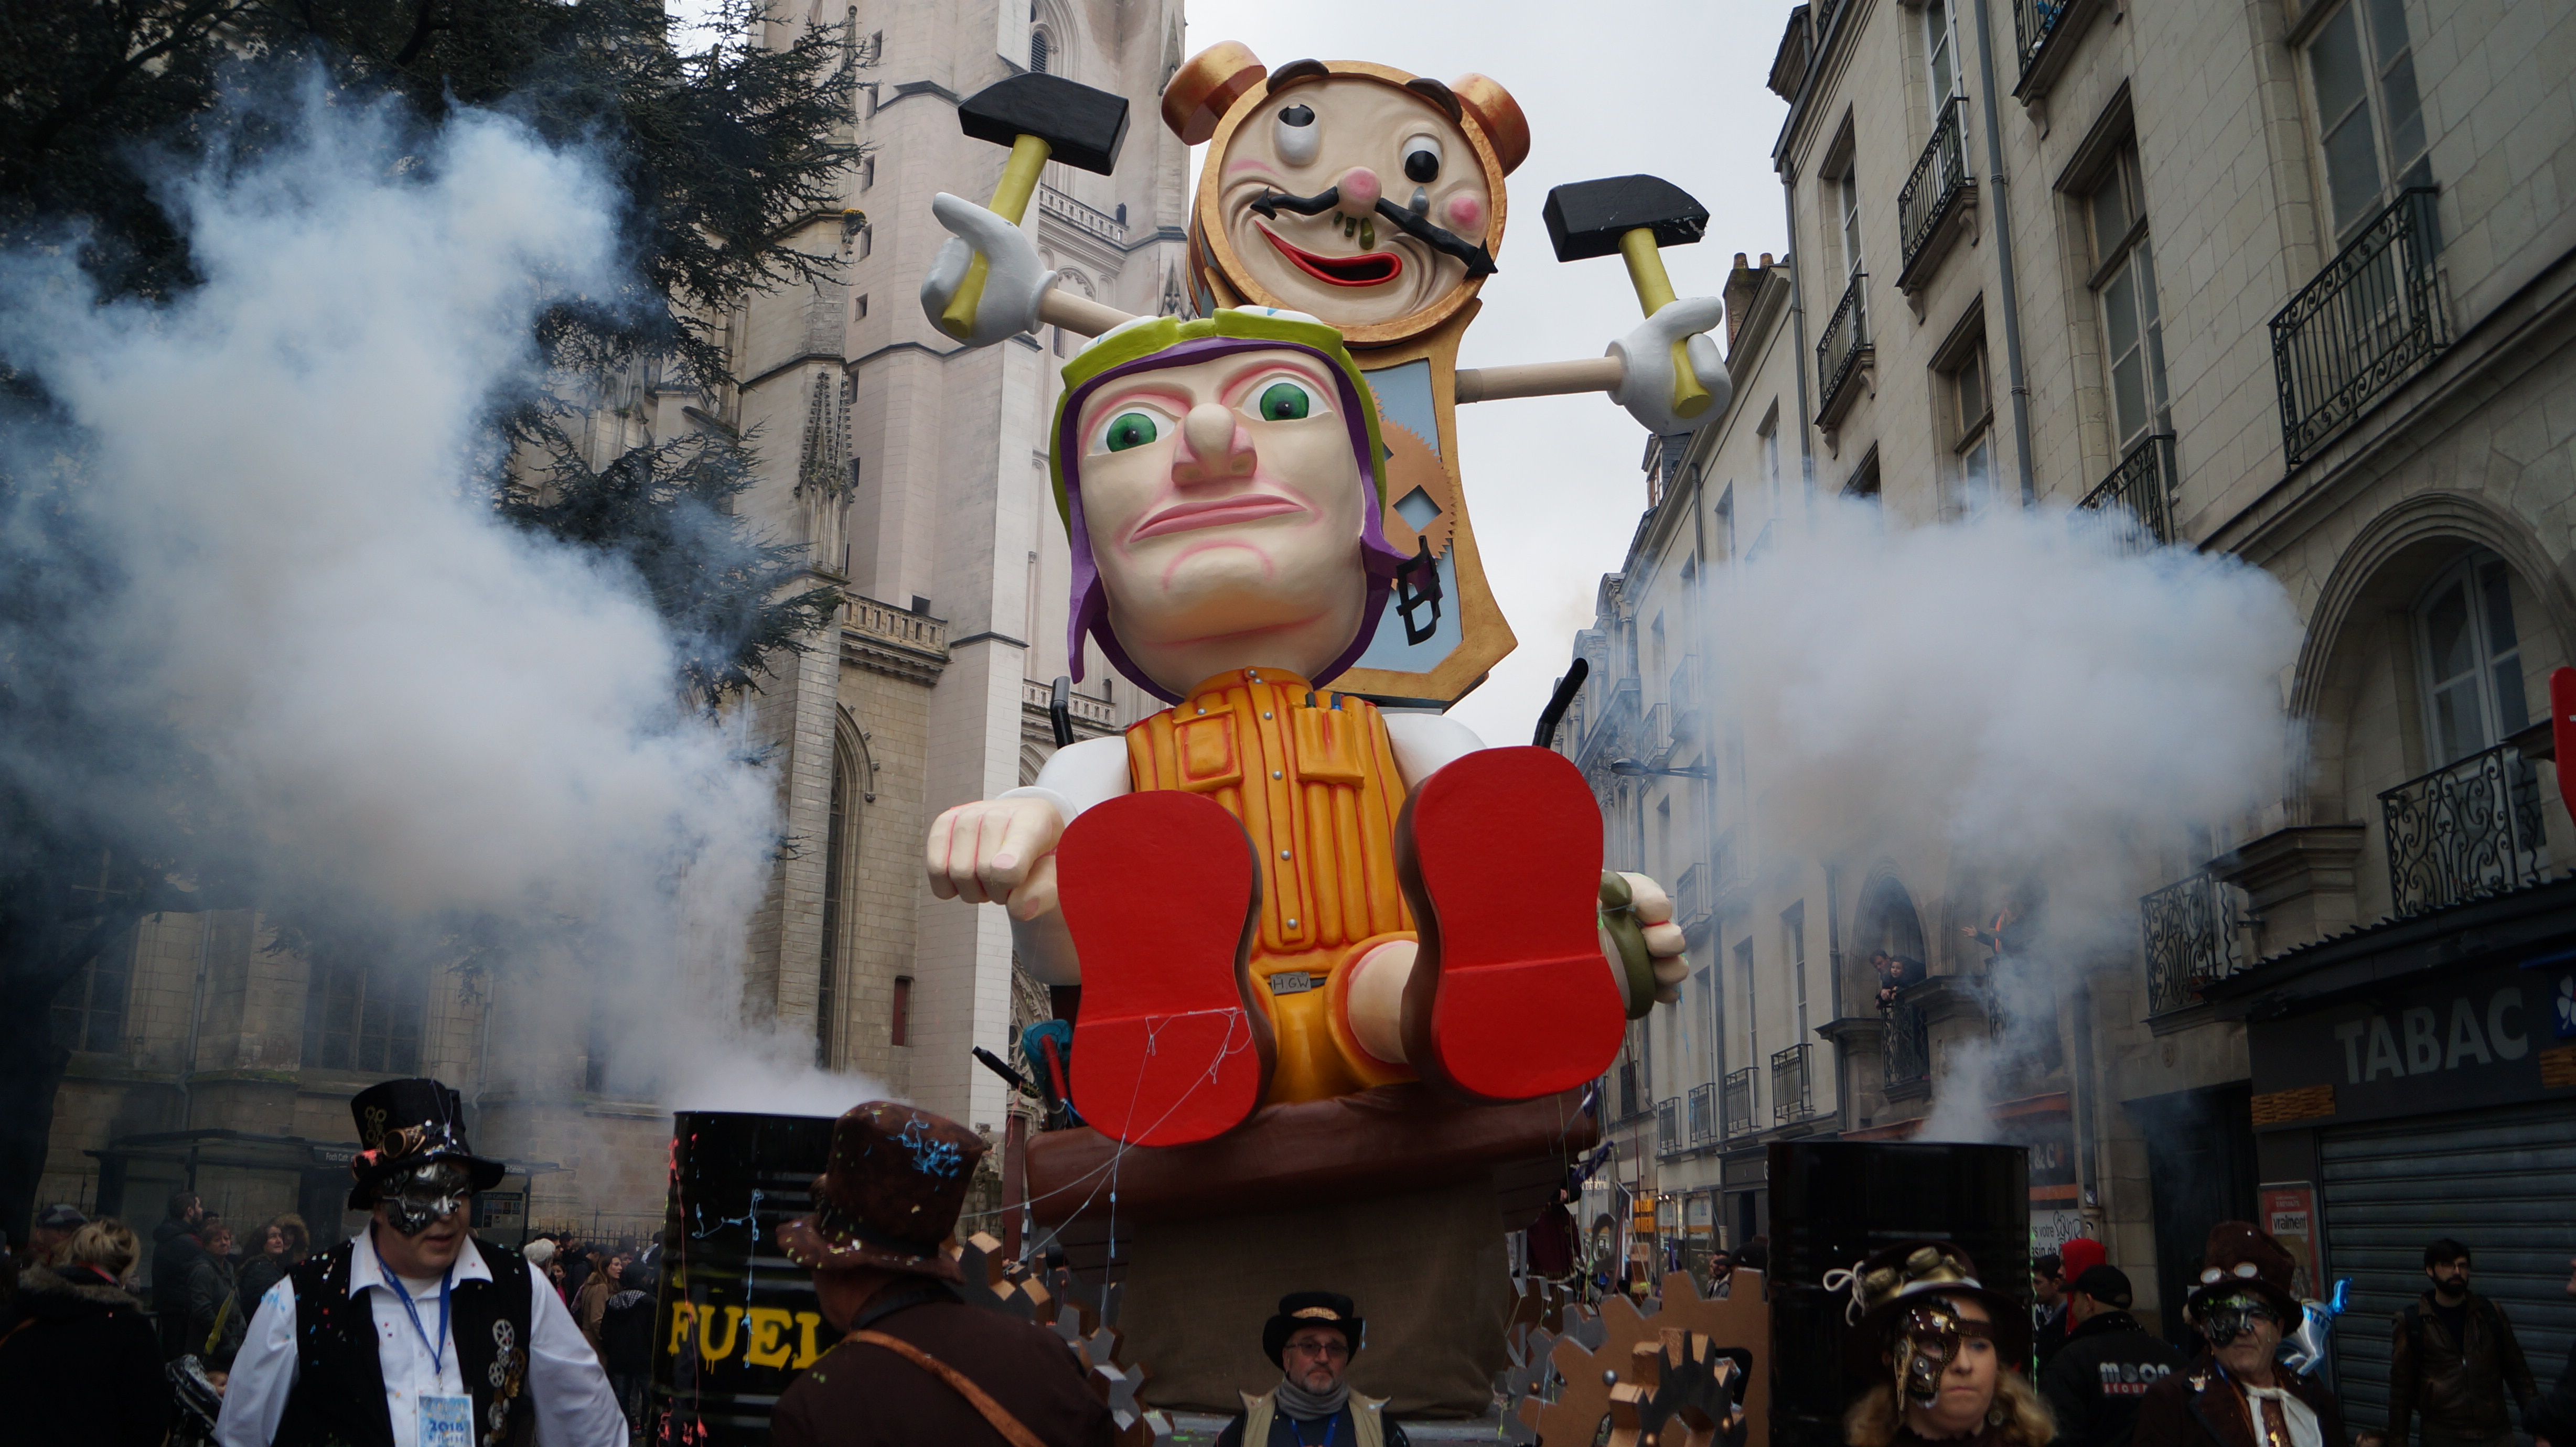 Carnaval des enfants 2023 à Nantes - Annulé